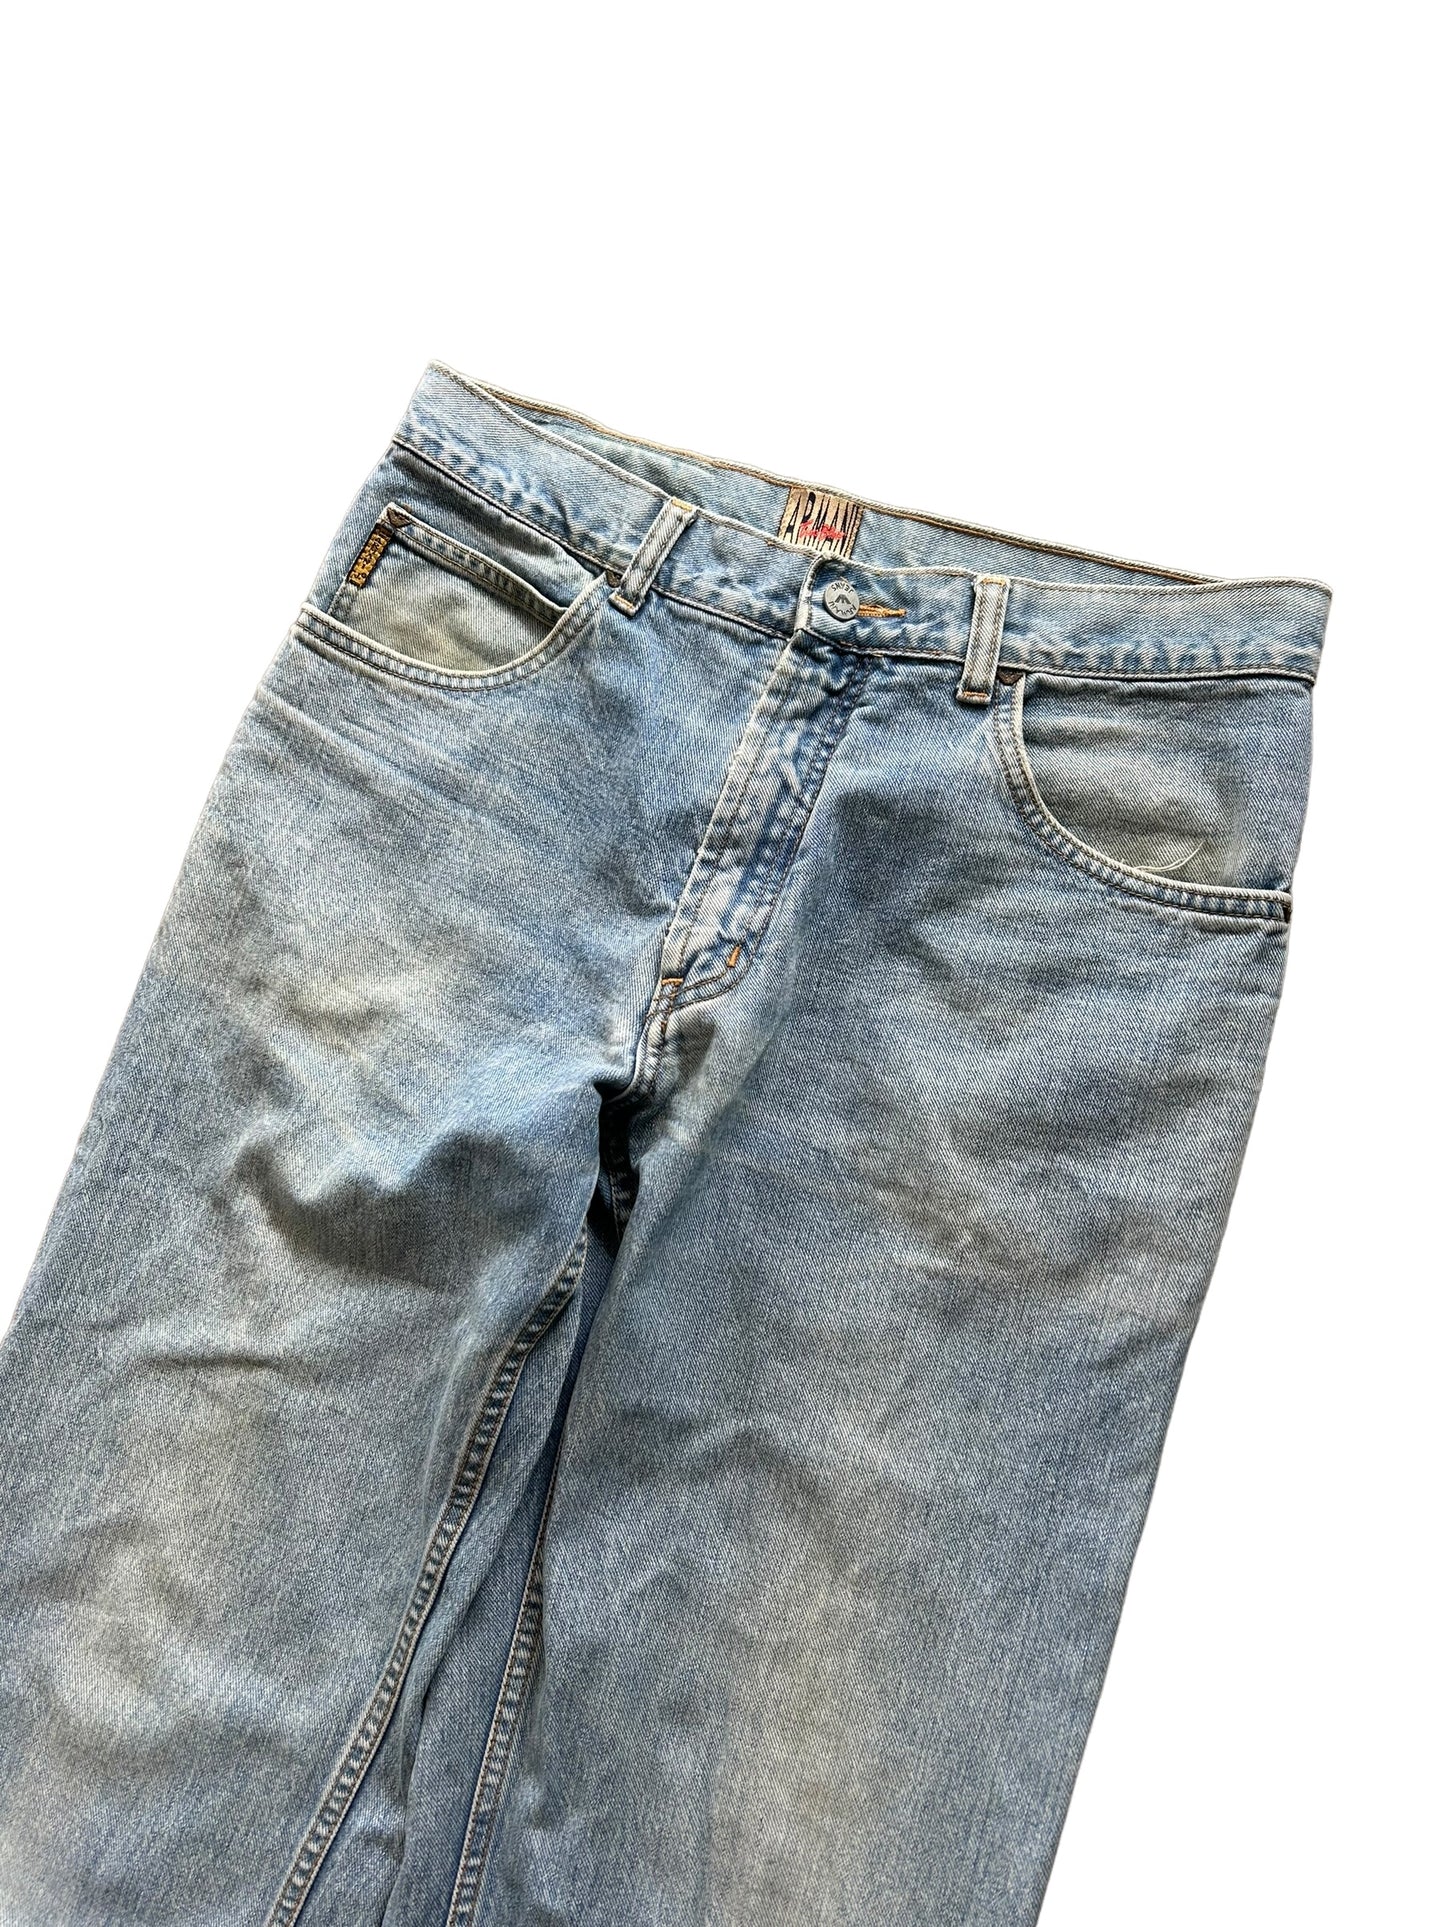 Vintage Armani Denim Jeans